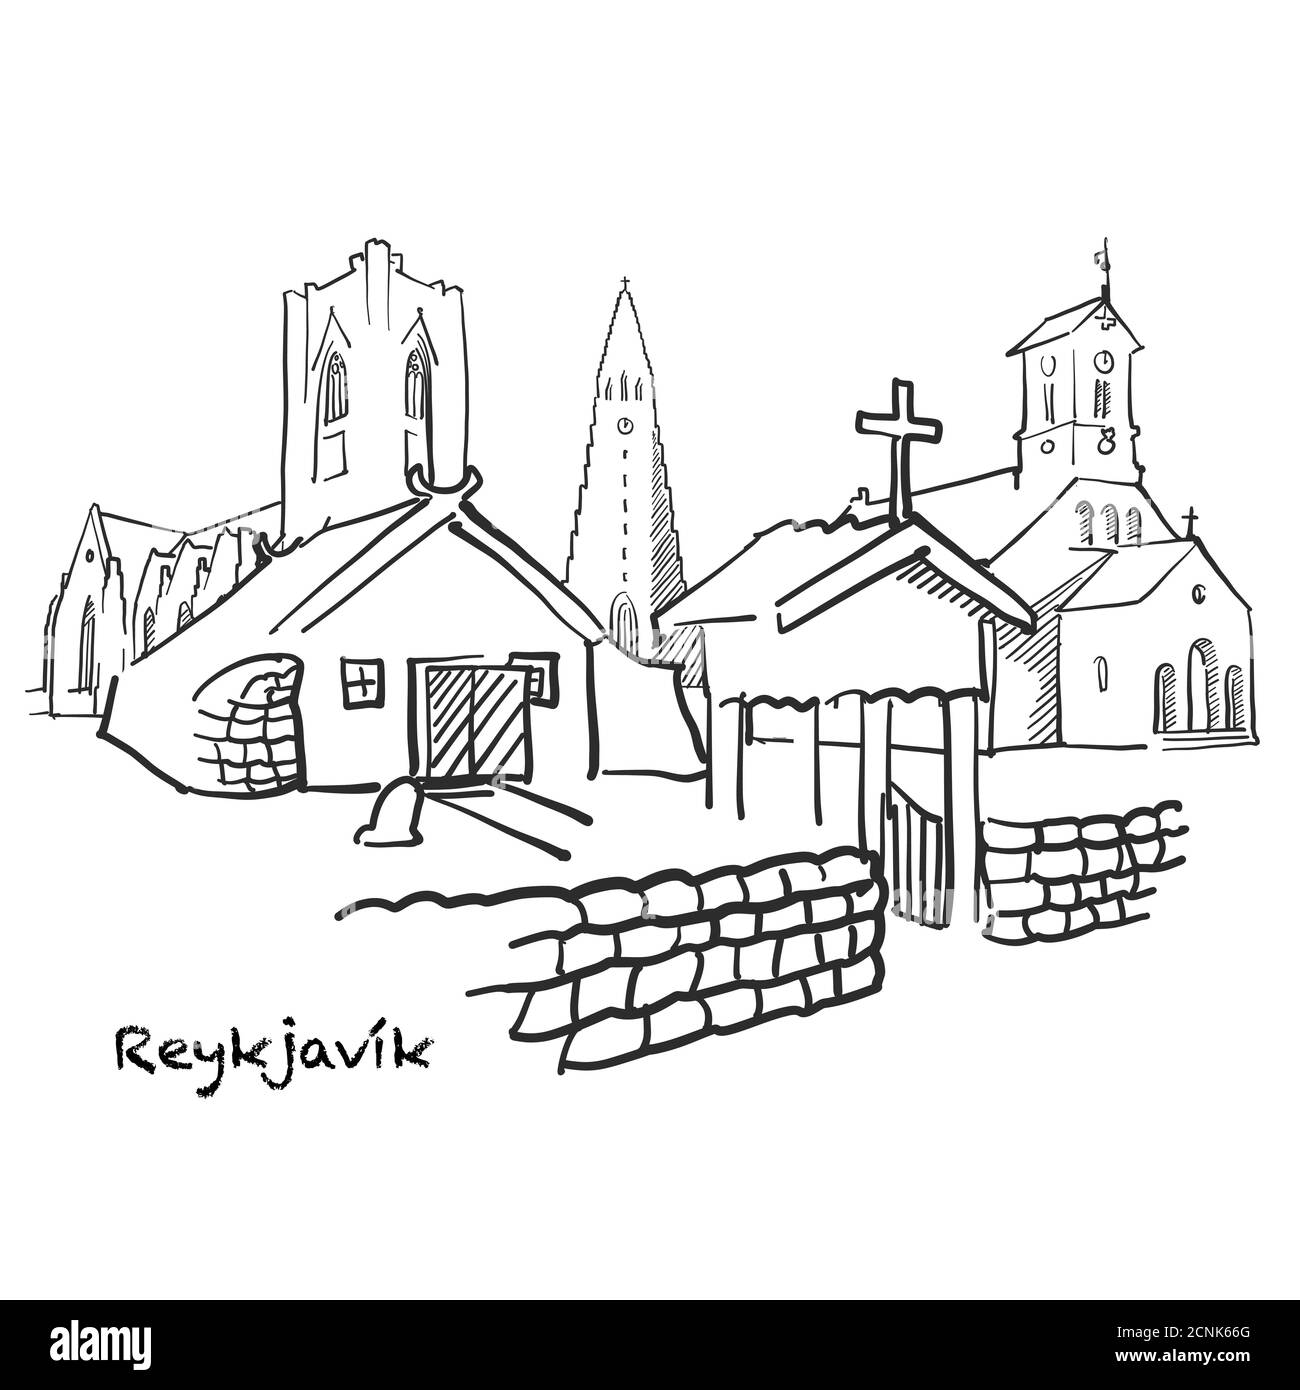 Célèbres bâtiments de Reykjavík, Islande composition. Illustration vectorielle noire et blanche dessinée à la main. Objets groupés et mobiles. Illustration de Vecteur